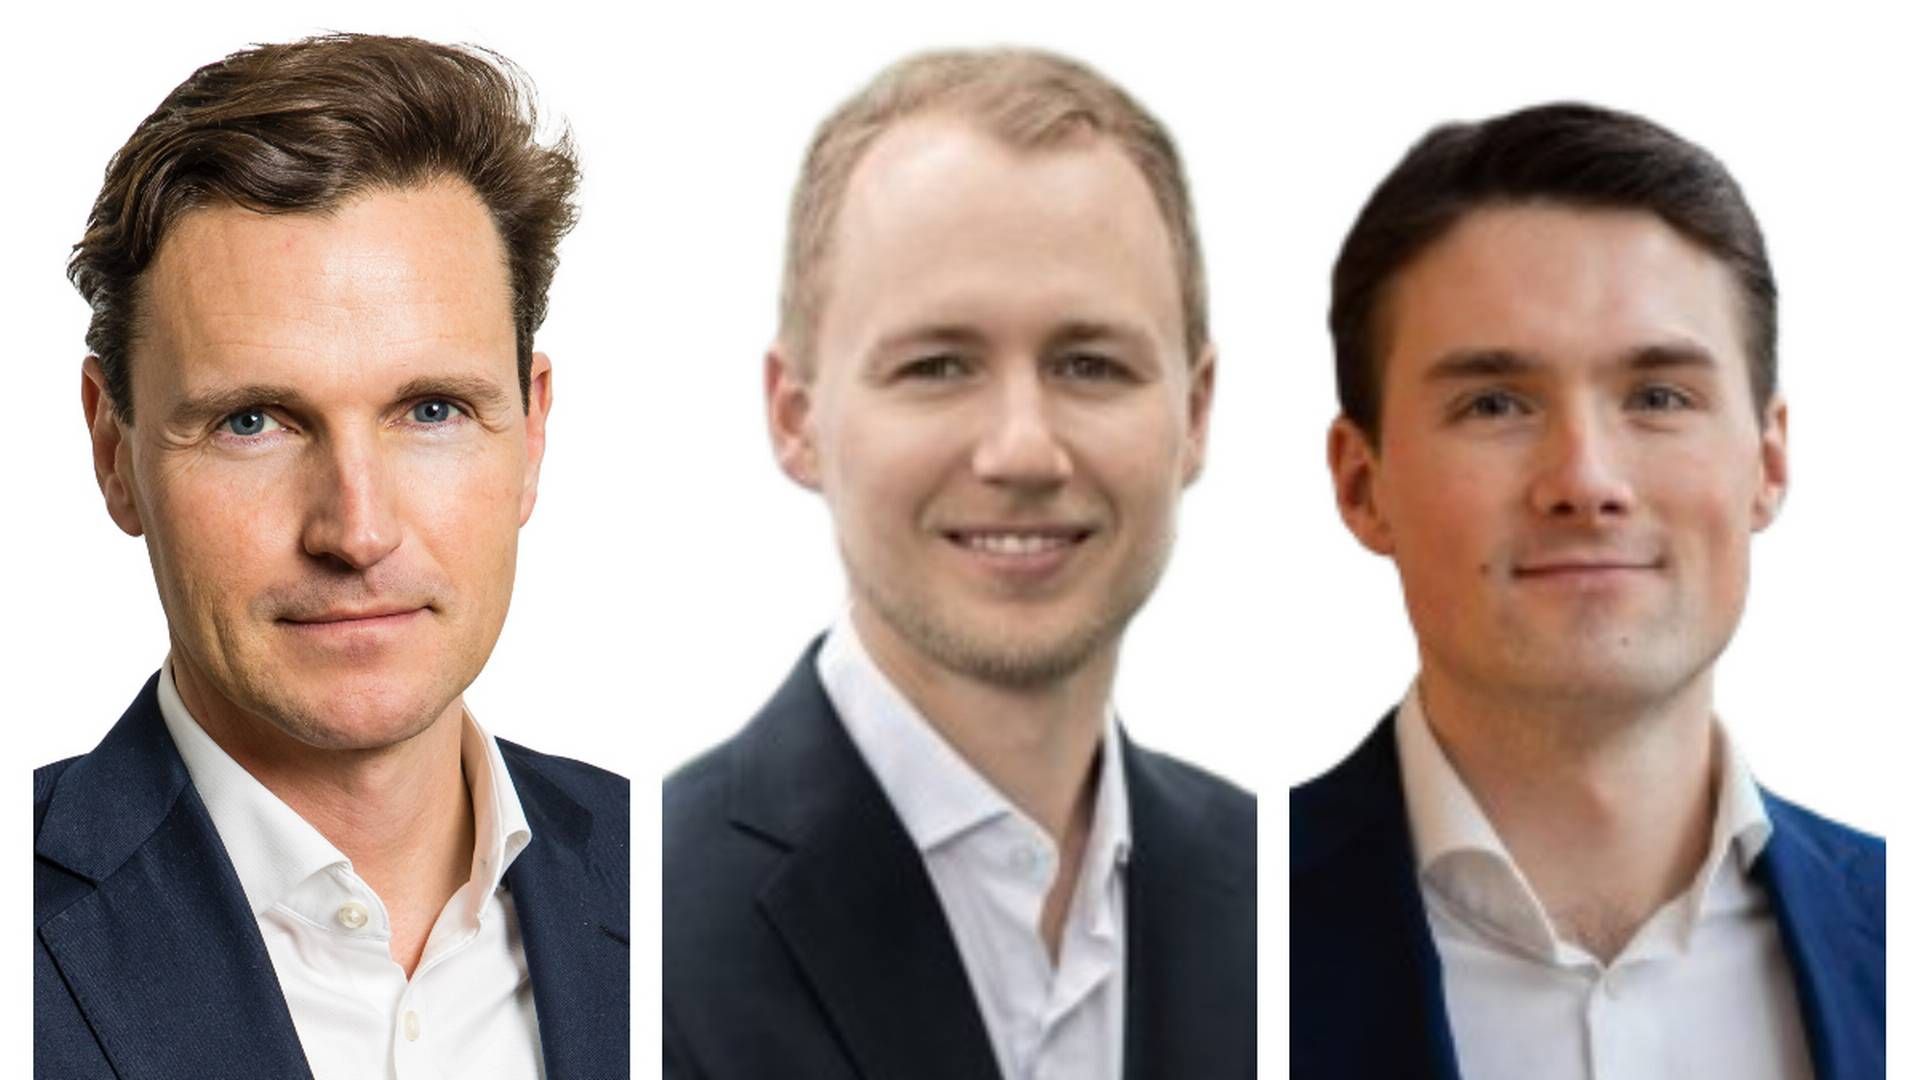 (L-R) Bernt Berg-Nielsen, Stolt Kapitalforvaltning, Ivar Harstveit and Erik Berg-Johnsen, Delphi Funds.